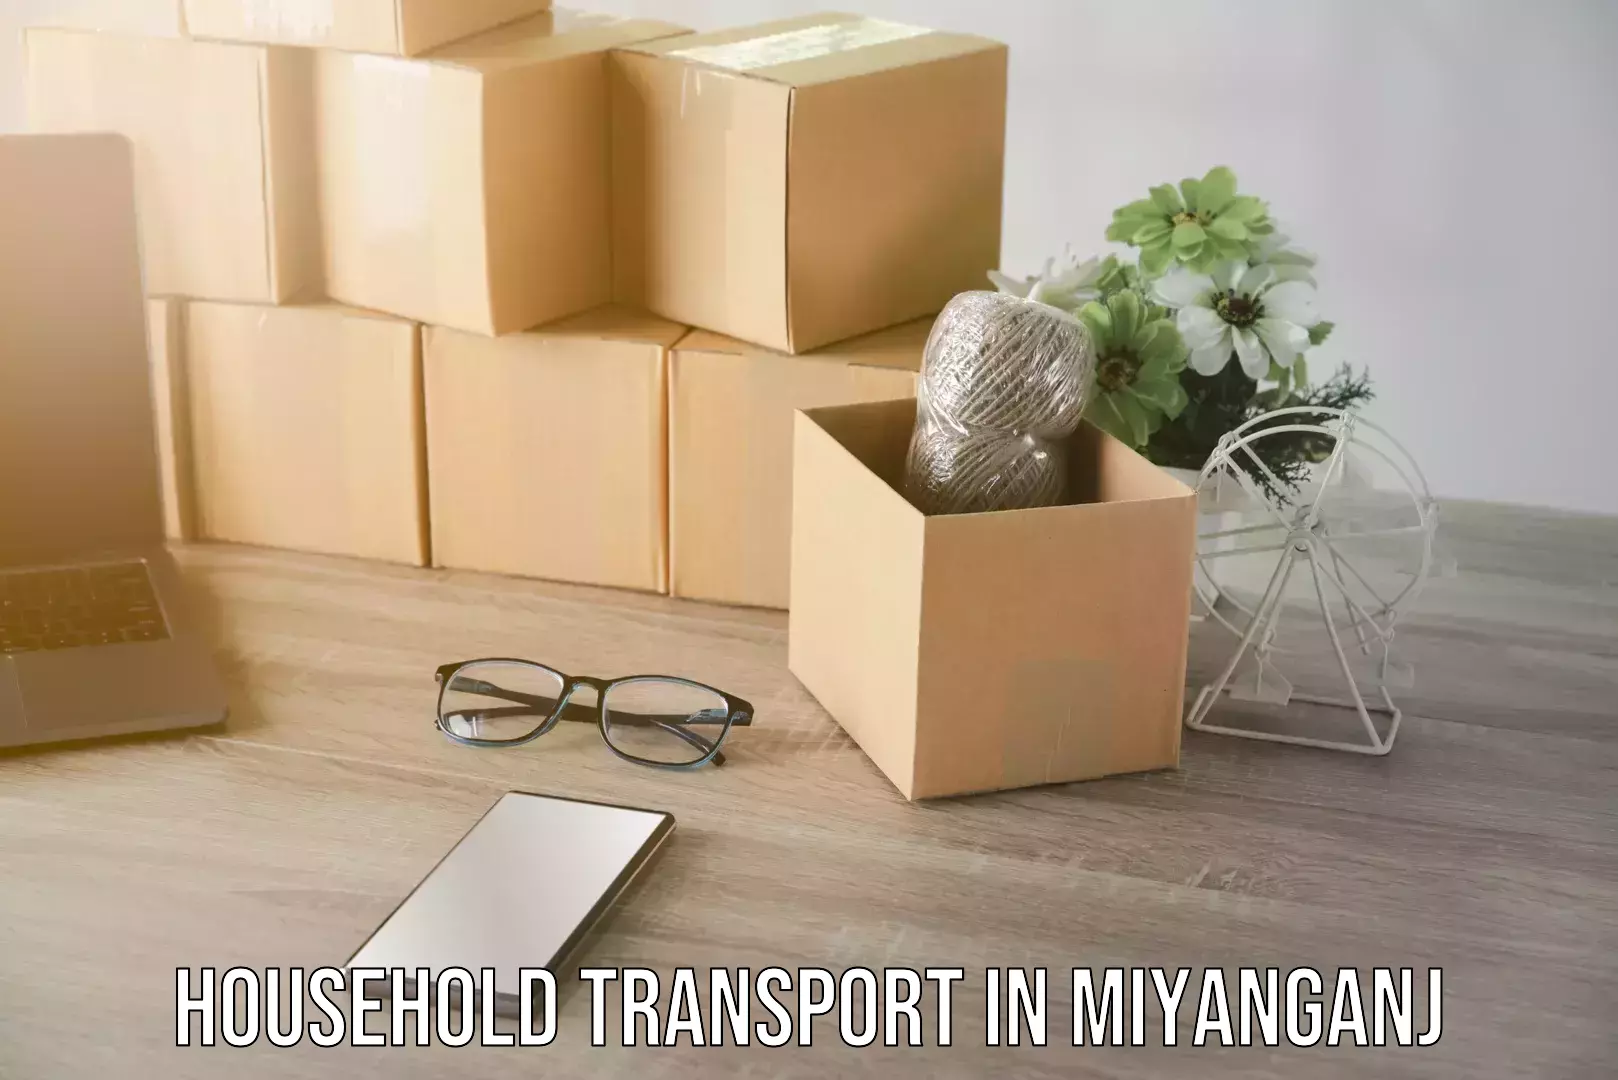 Household goods transport service in Miyanganj